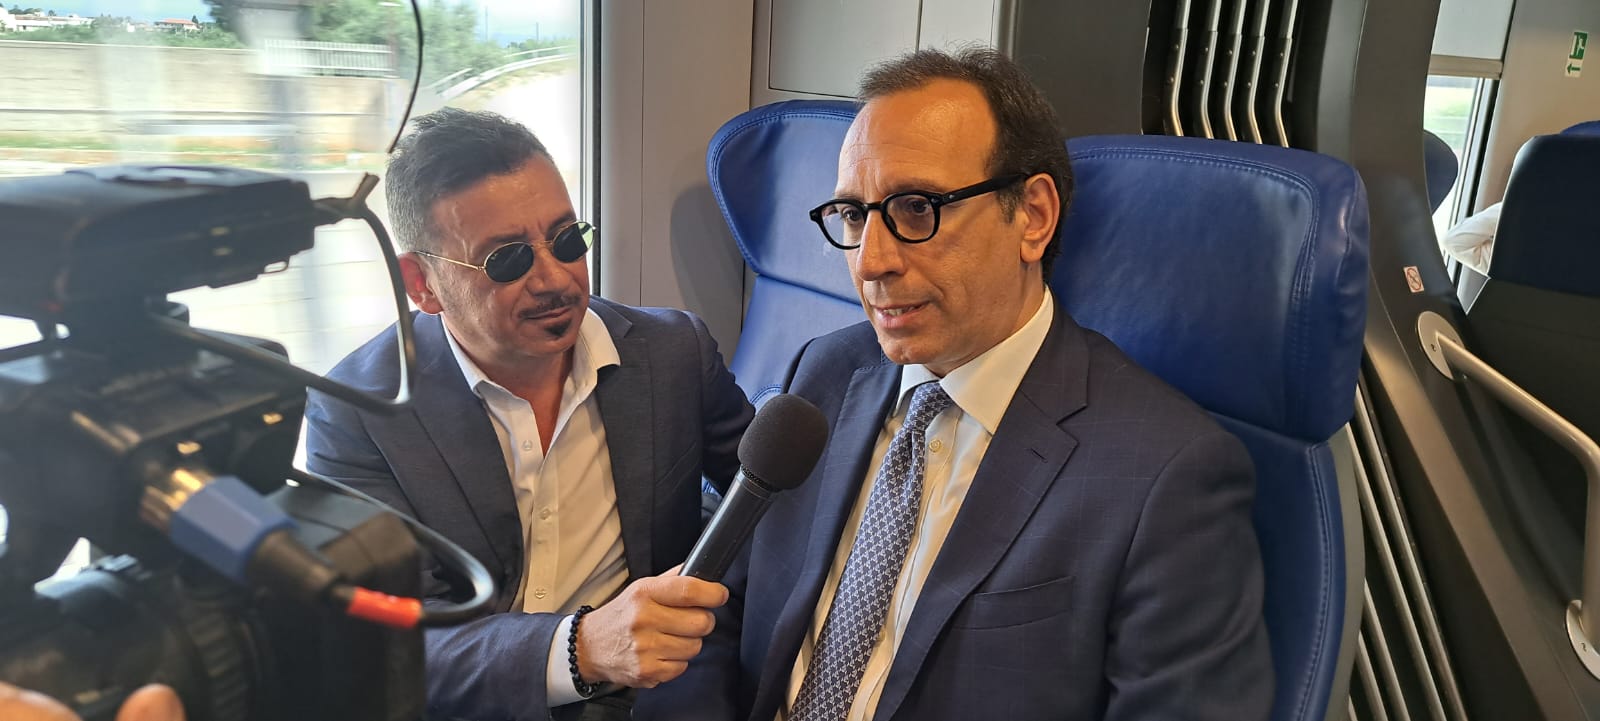 rete ferroviaria - 4 nuove tratte in Sicilia - RFI